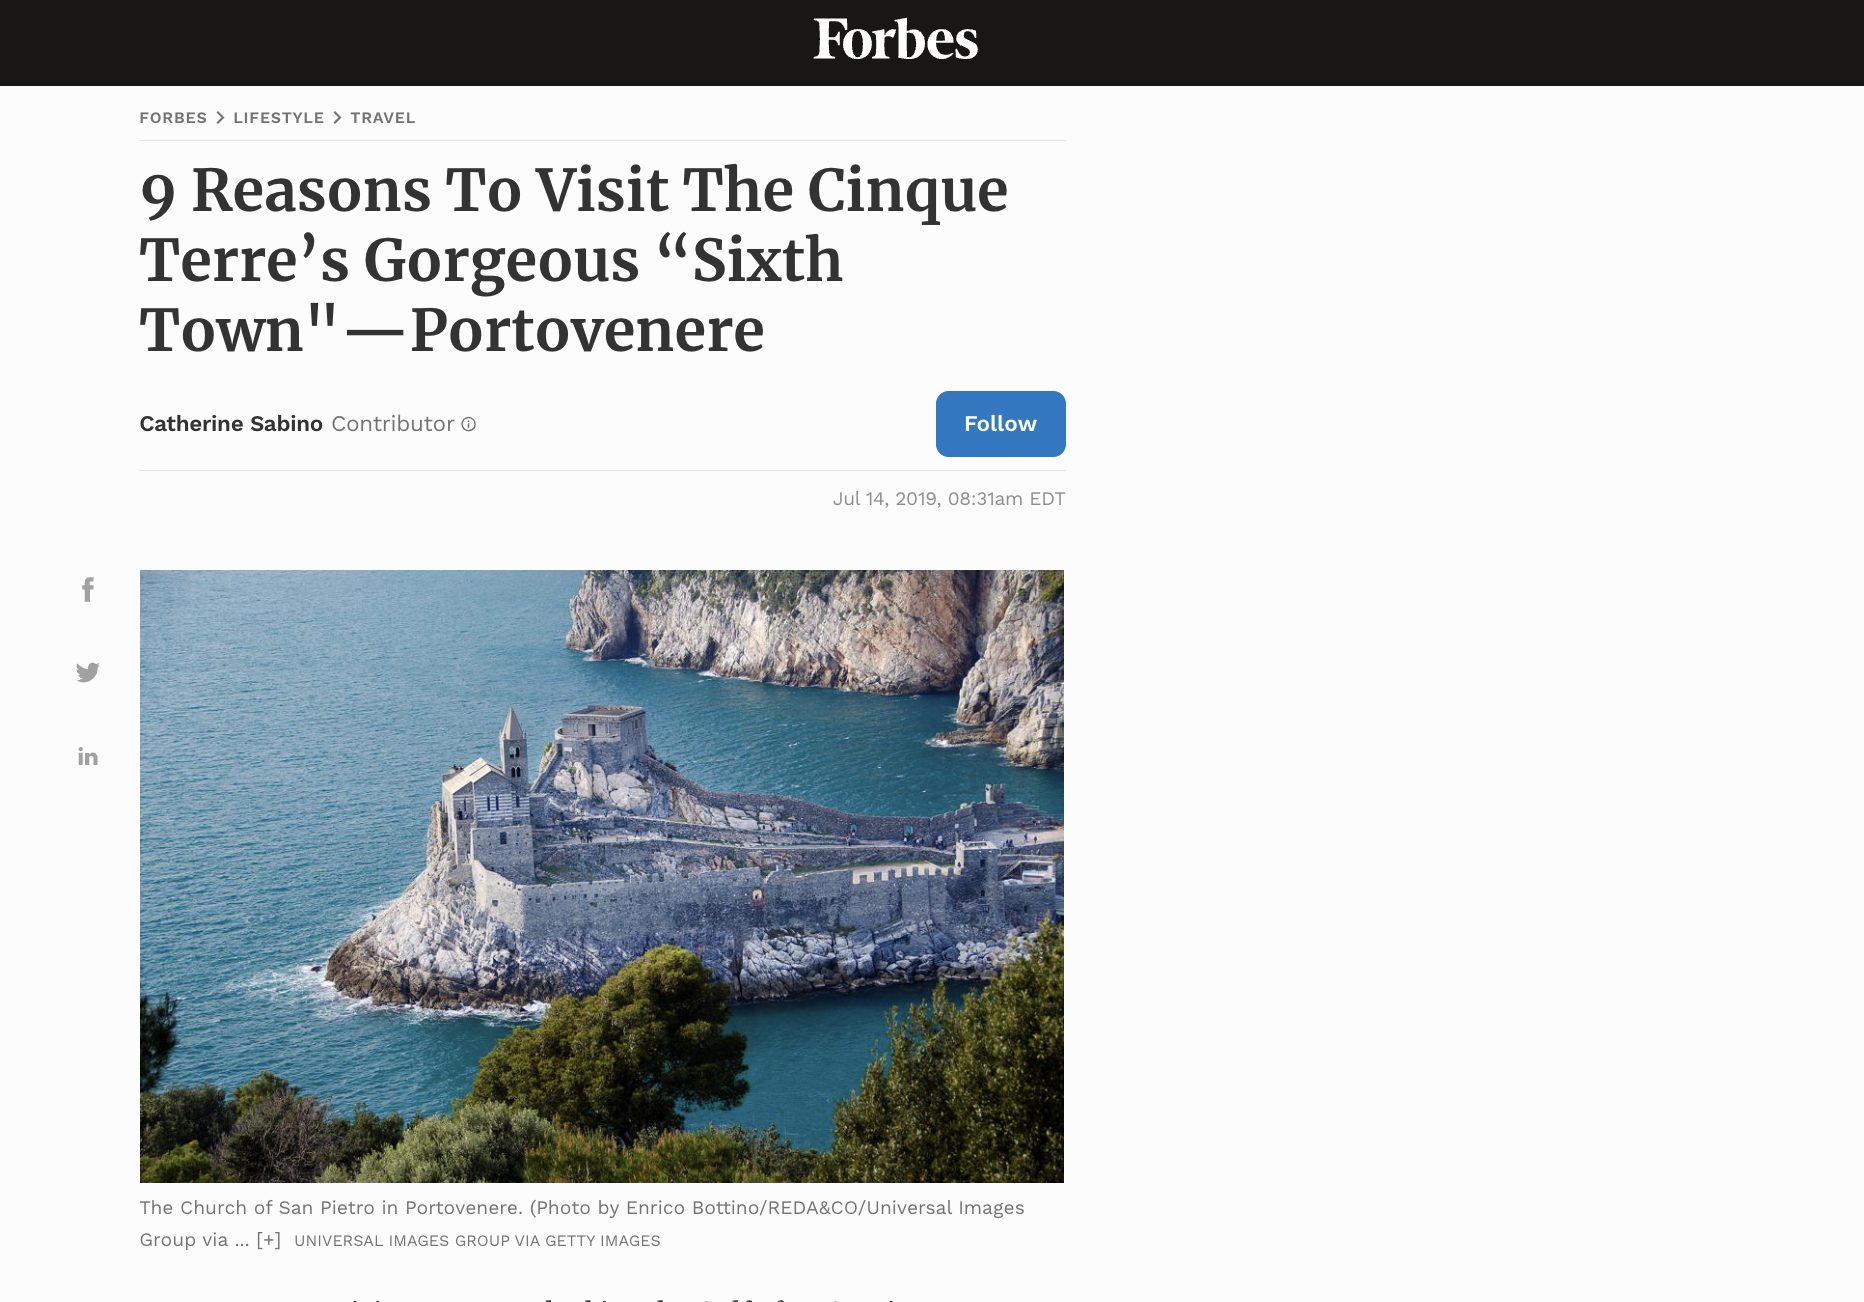 9 ragioni per visitare le cinque terre articolo Forbes